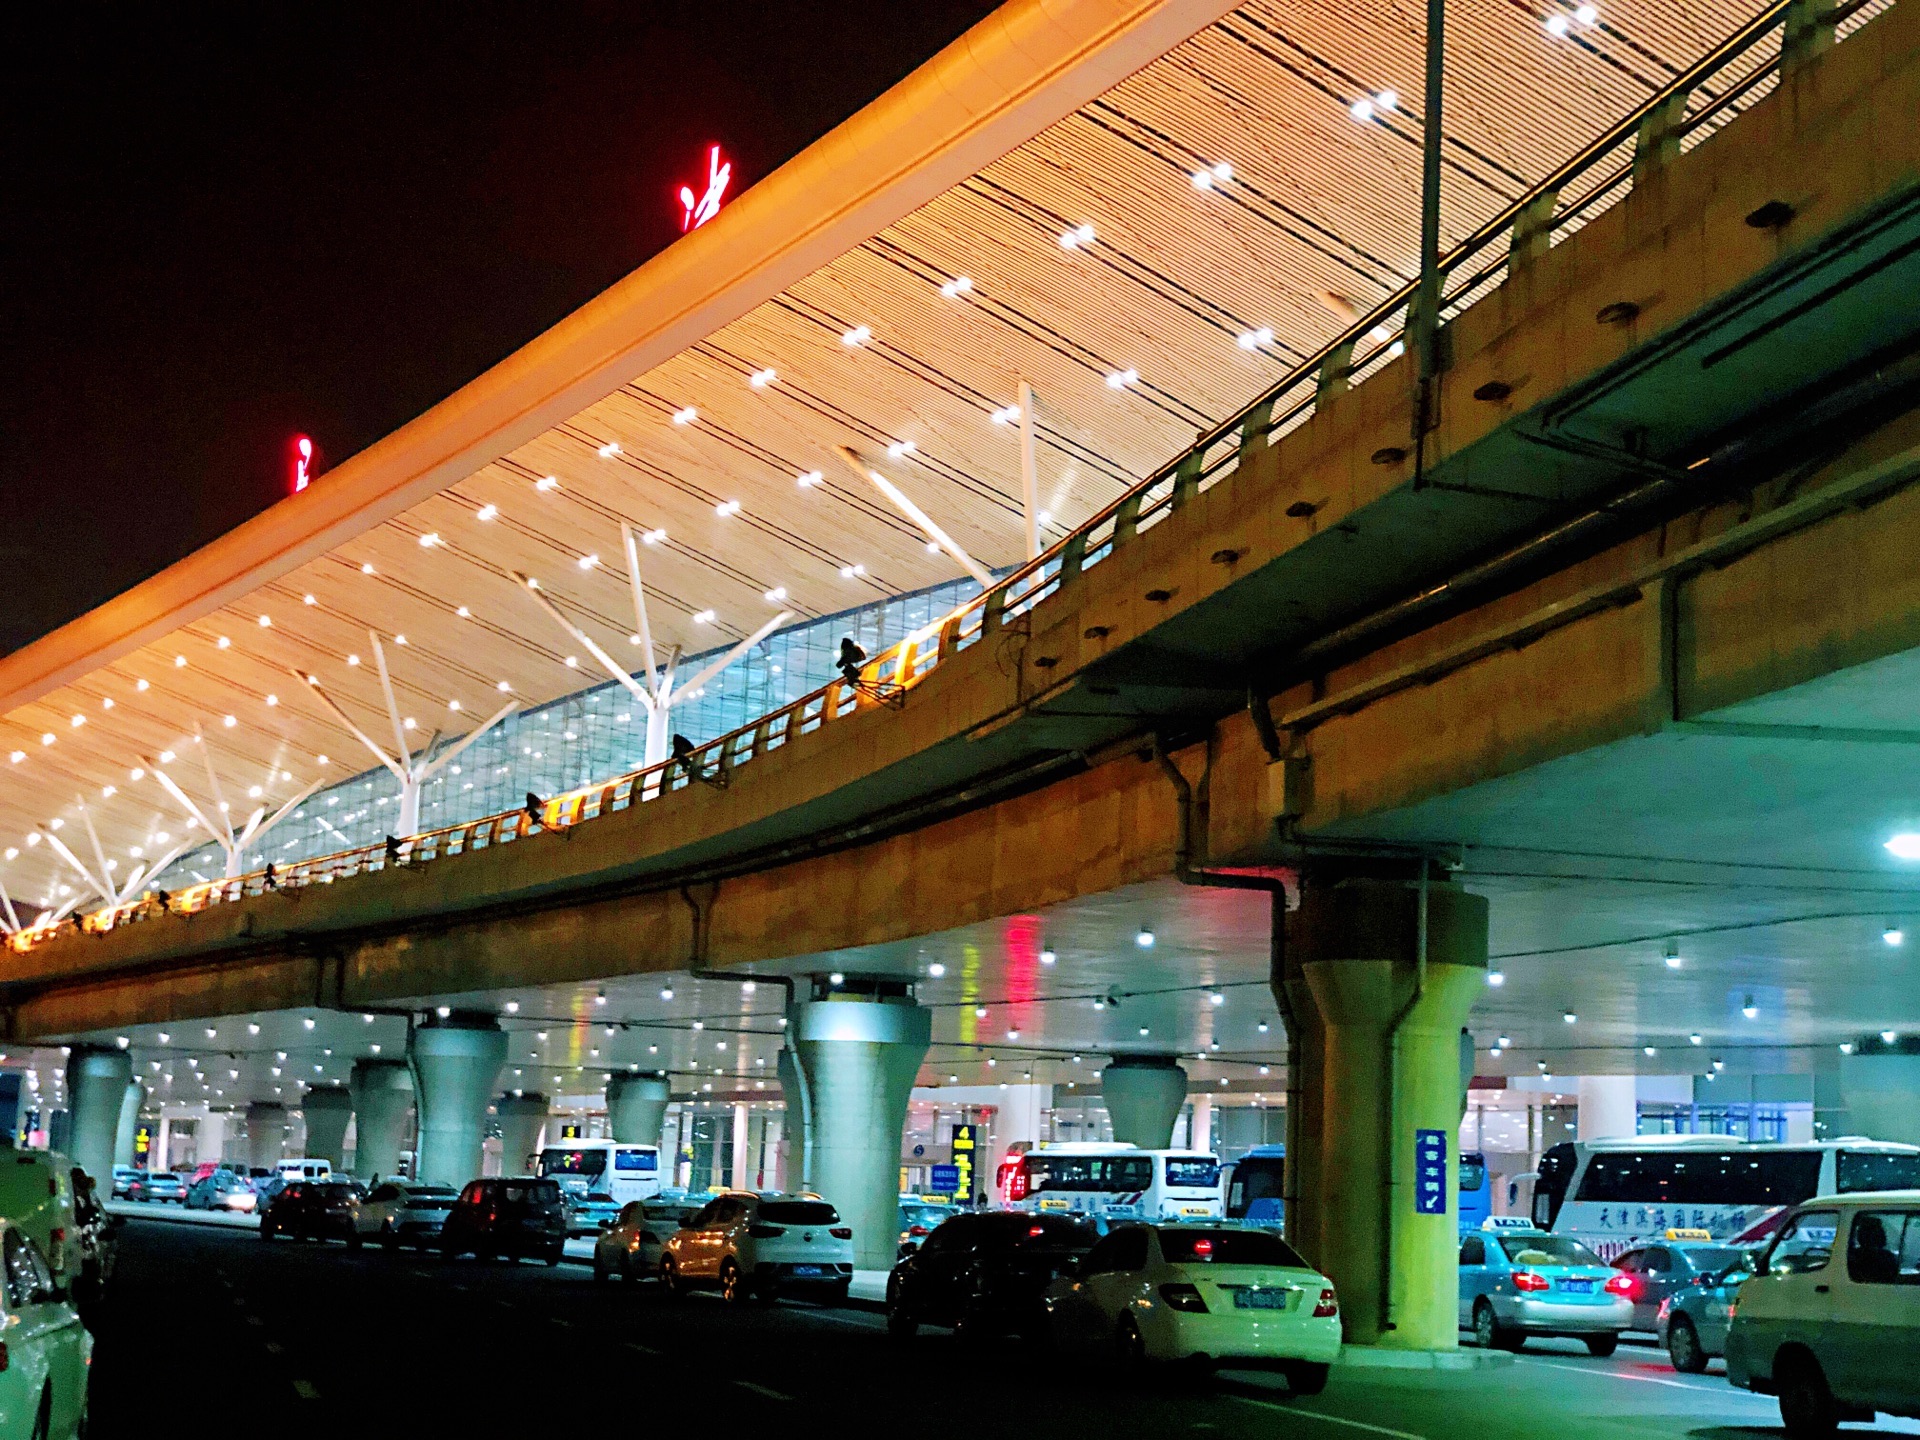 【携程攻略】滨海国际机场怎么样/怎么去,滨海国际机场用户点评/评价